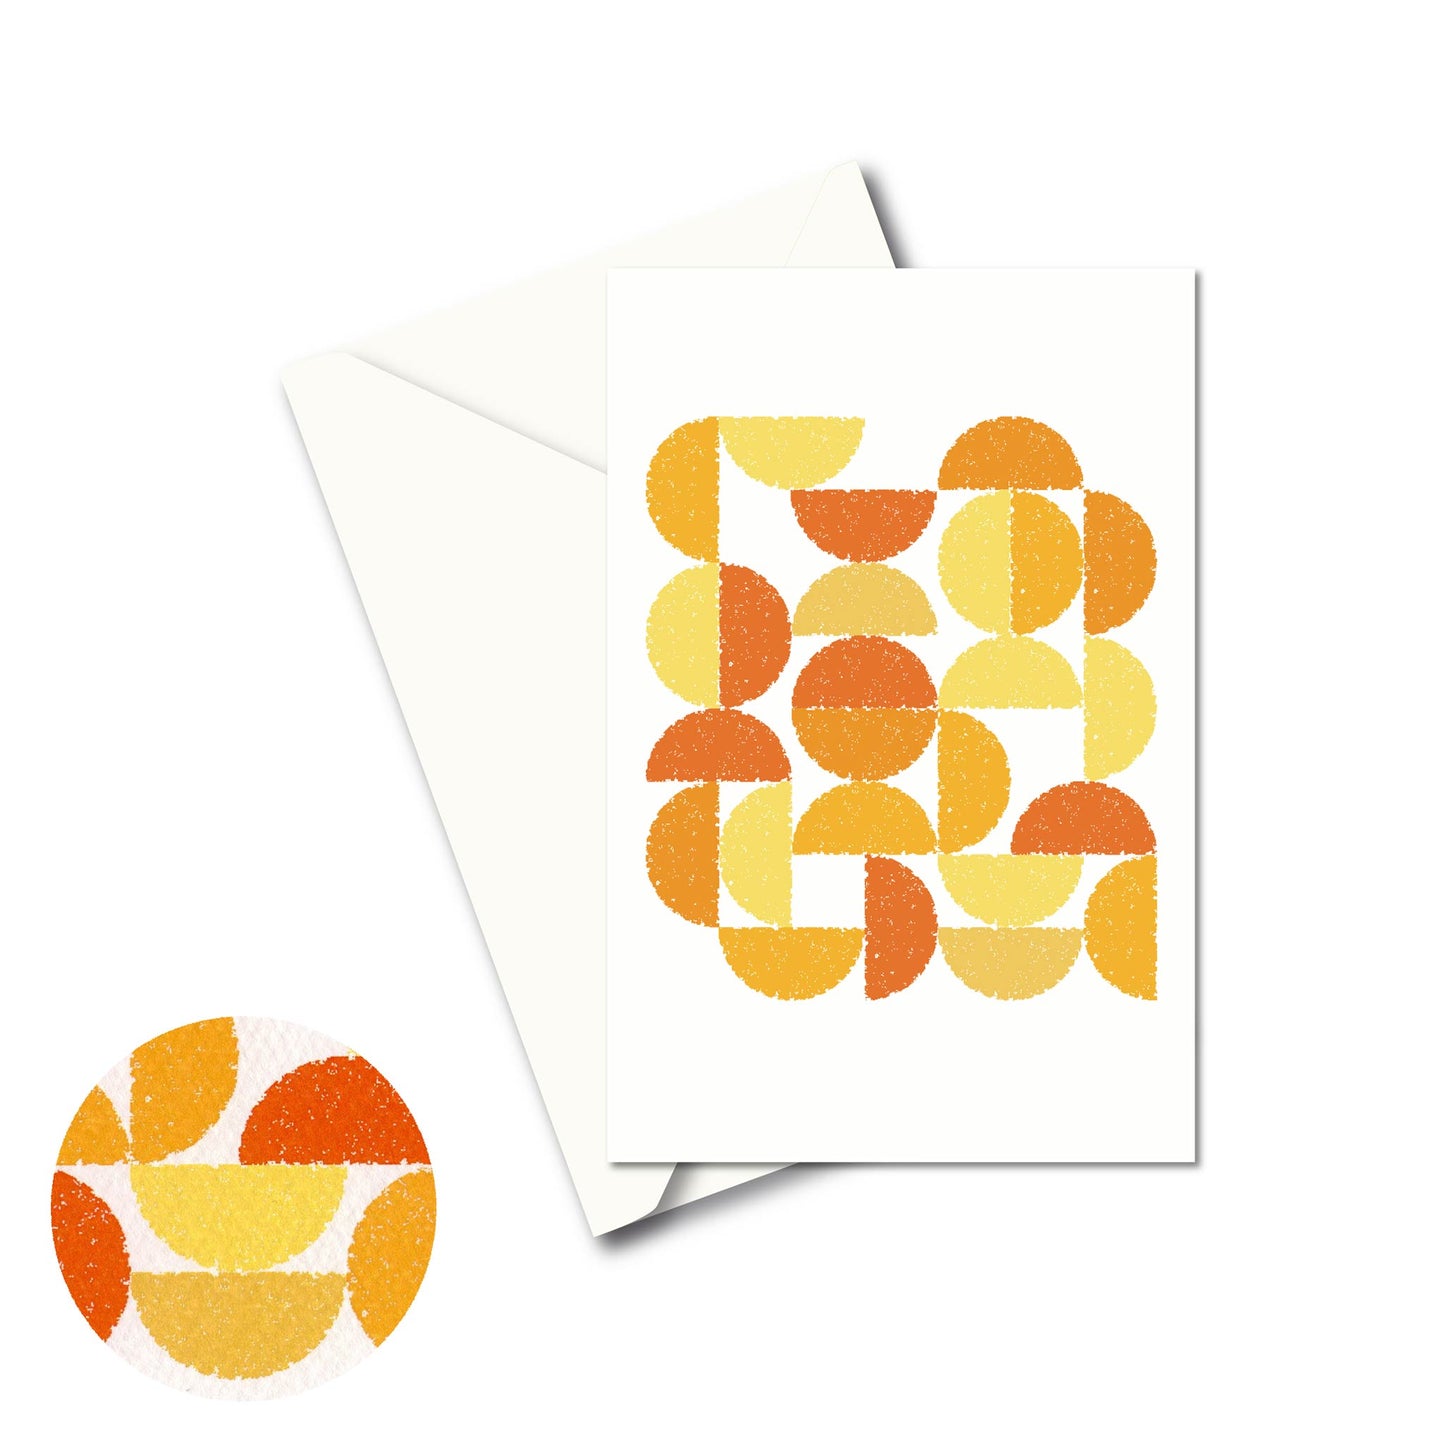 Productafbeelding, wenskaart "ronde kleuren naar sienna oker", de voorzijde met een envelop